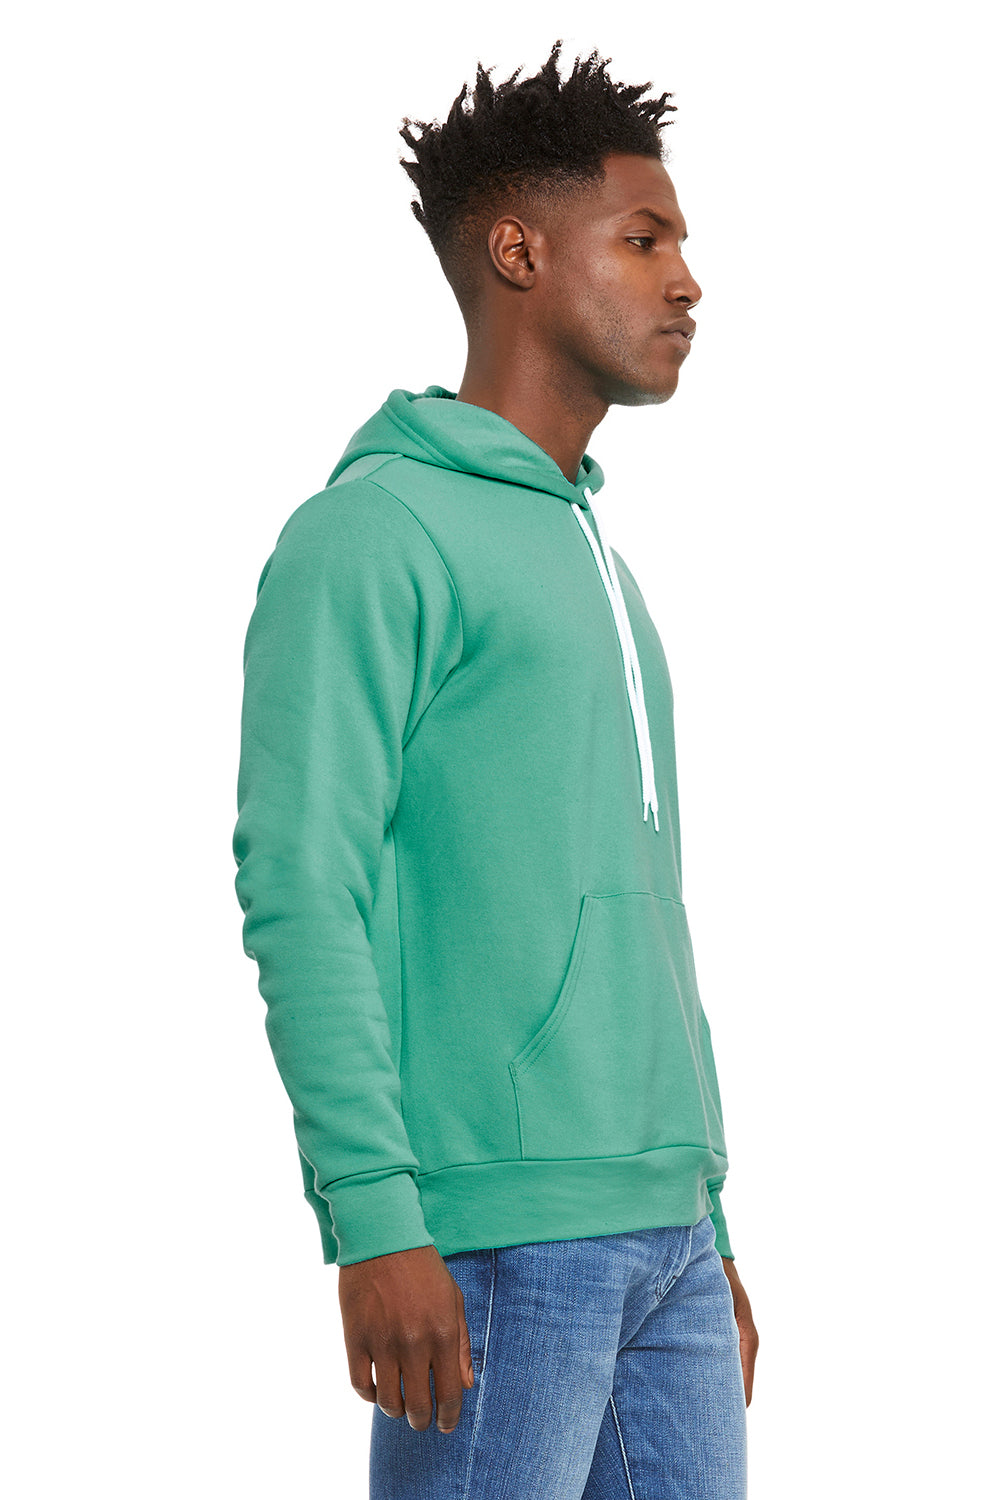 Bella + Canvas BC3719/3719 Mens Sponge Fleece Hooded Sweatshirt Hoodie Teal Green Model Side